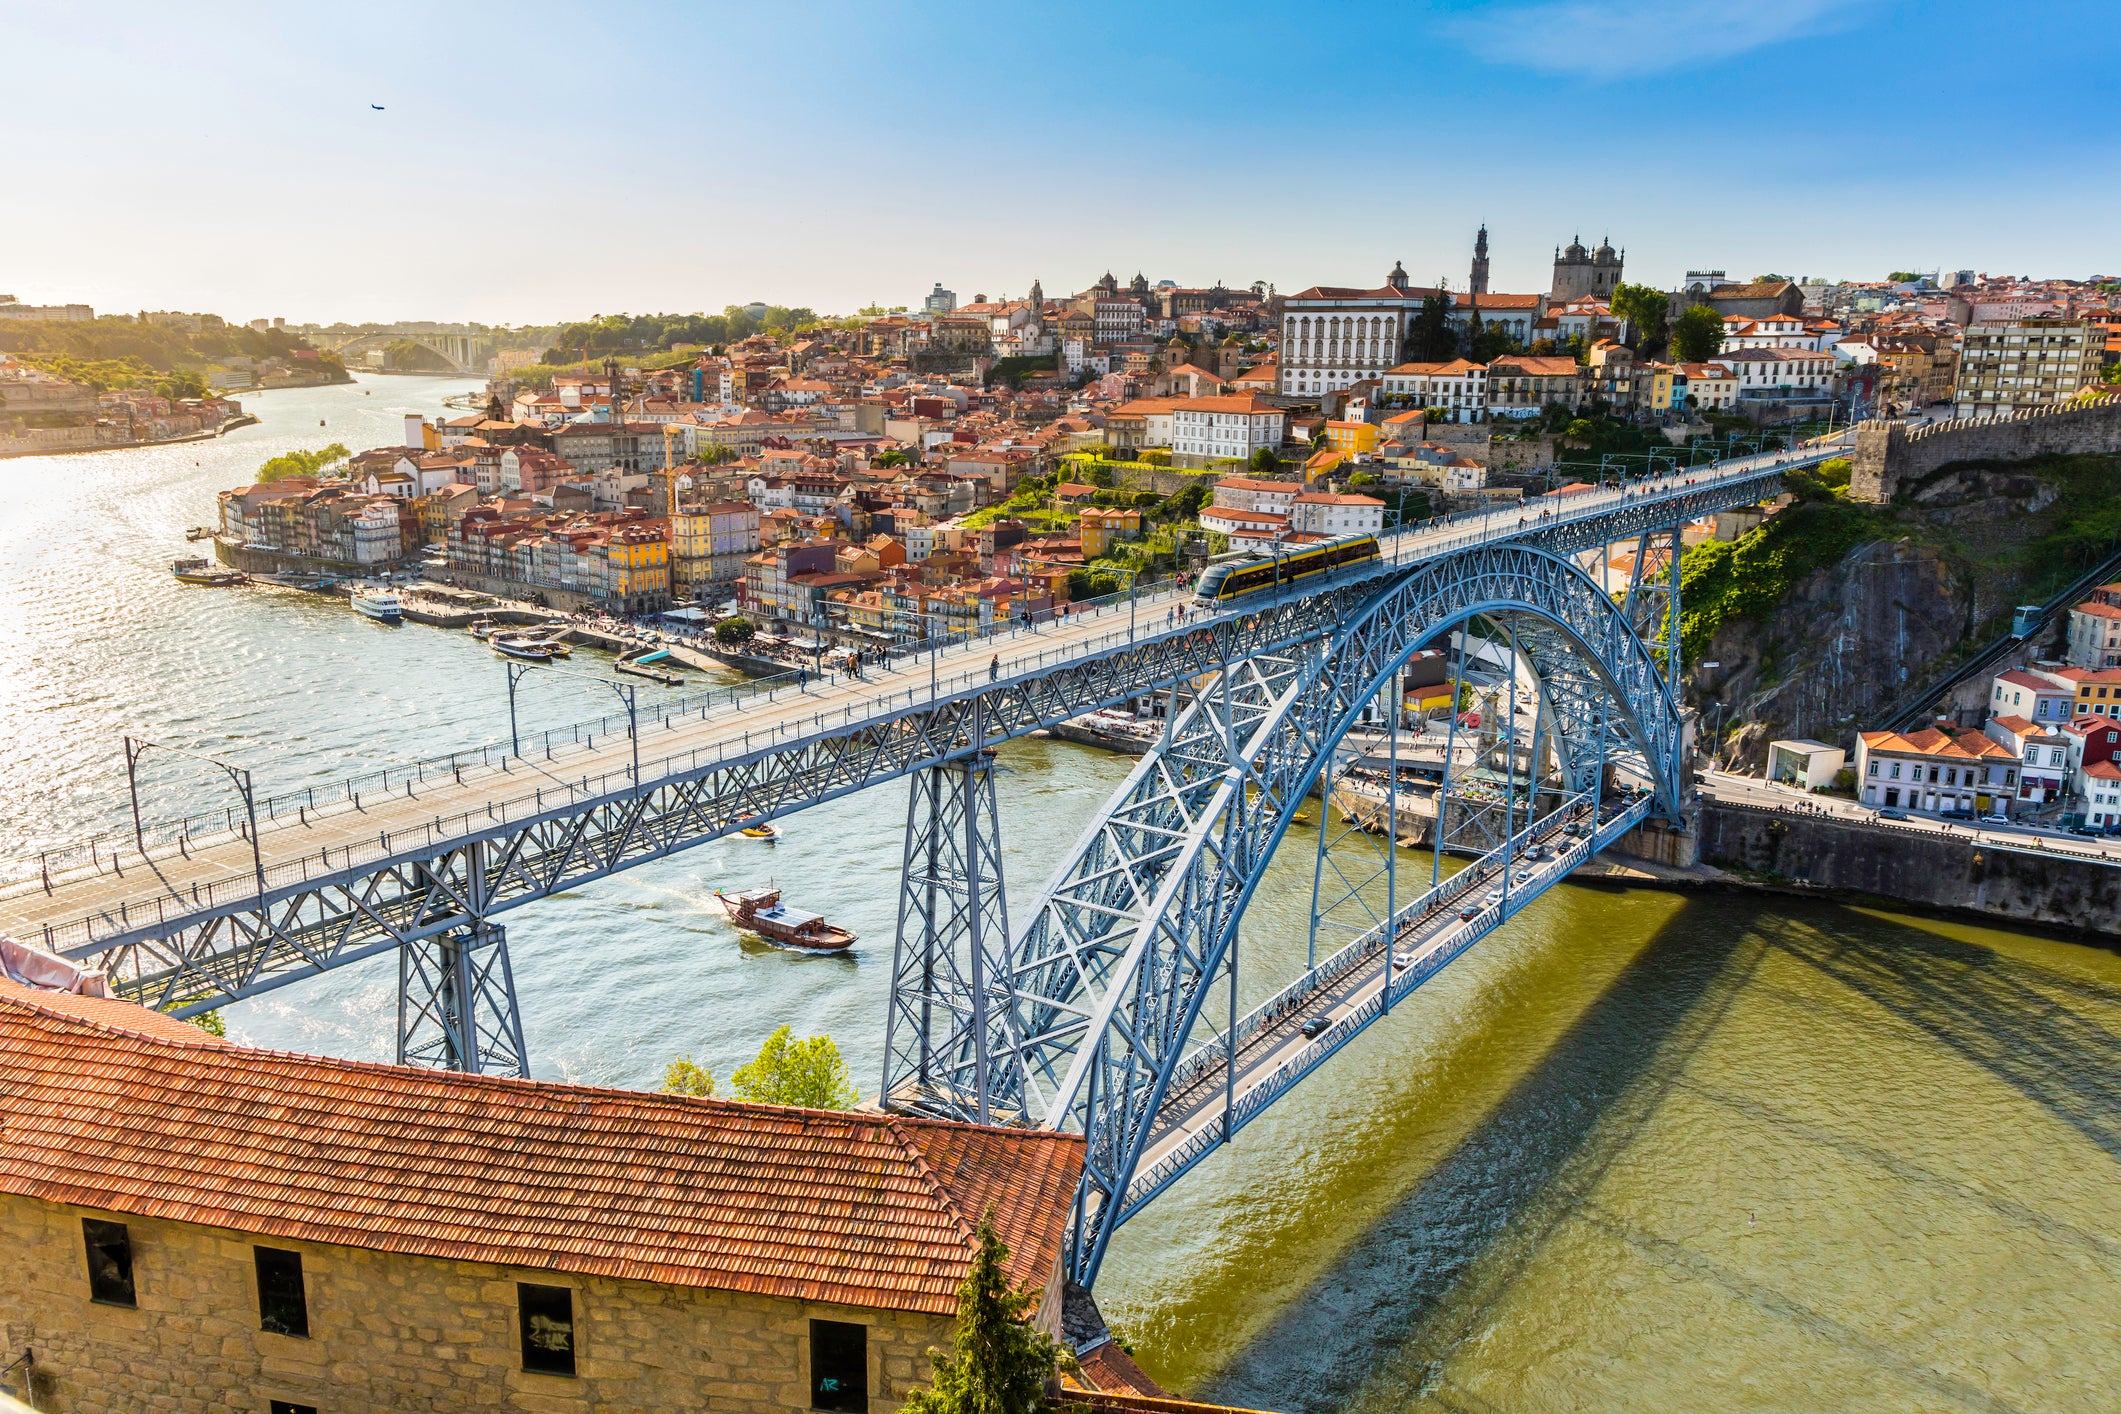 The Dom Luis bridge in Porto, Portugal